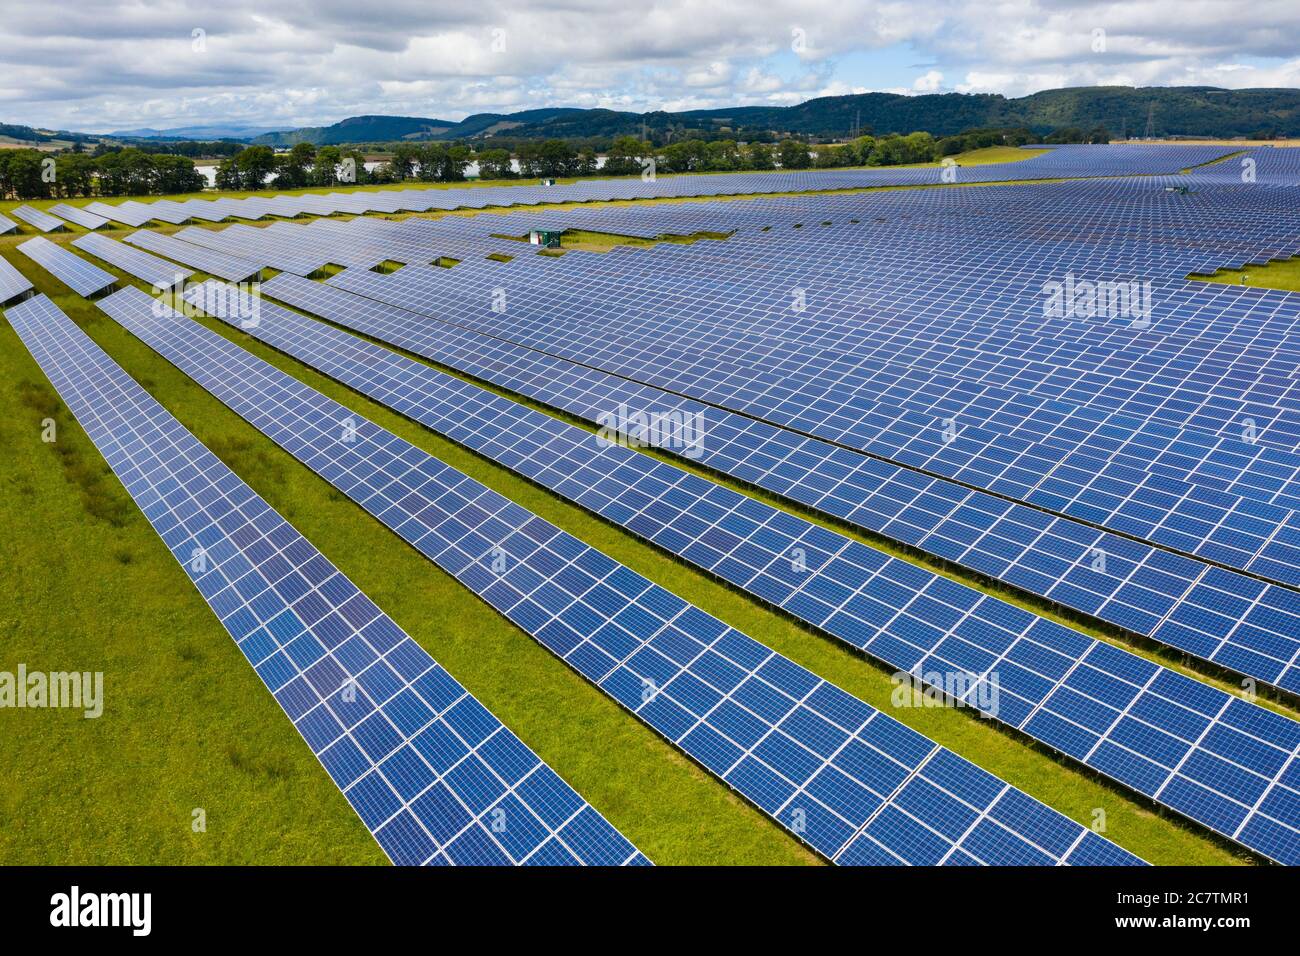 Vue aérienne de la ferme solaire Errol près de Perth en Écosse, au Royaume-Uni. Exploitée par Elgin Energy, elle est la plus grande ferme solaire d'Écosse, produisant 13 MW à partir de 55,000 Banque D'Images